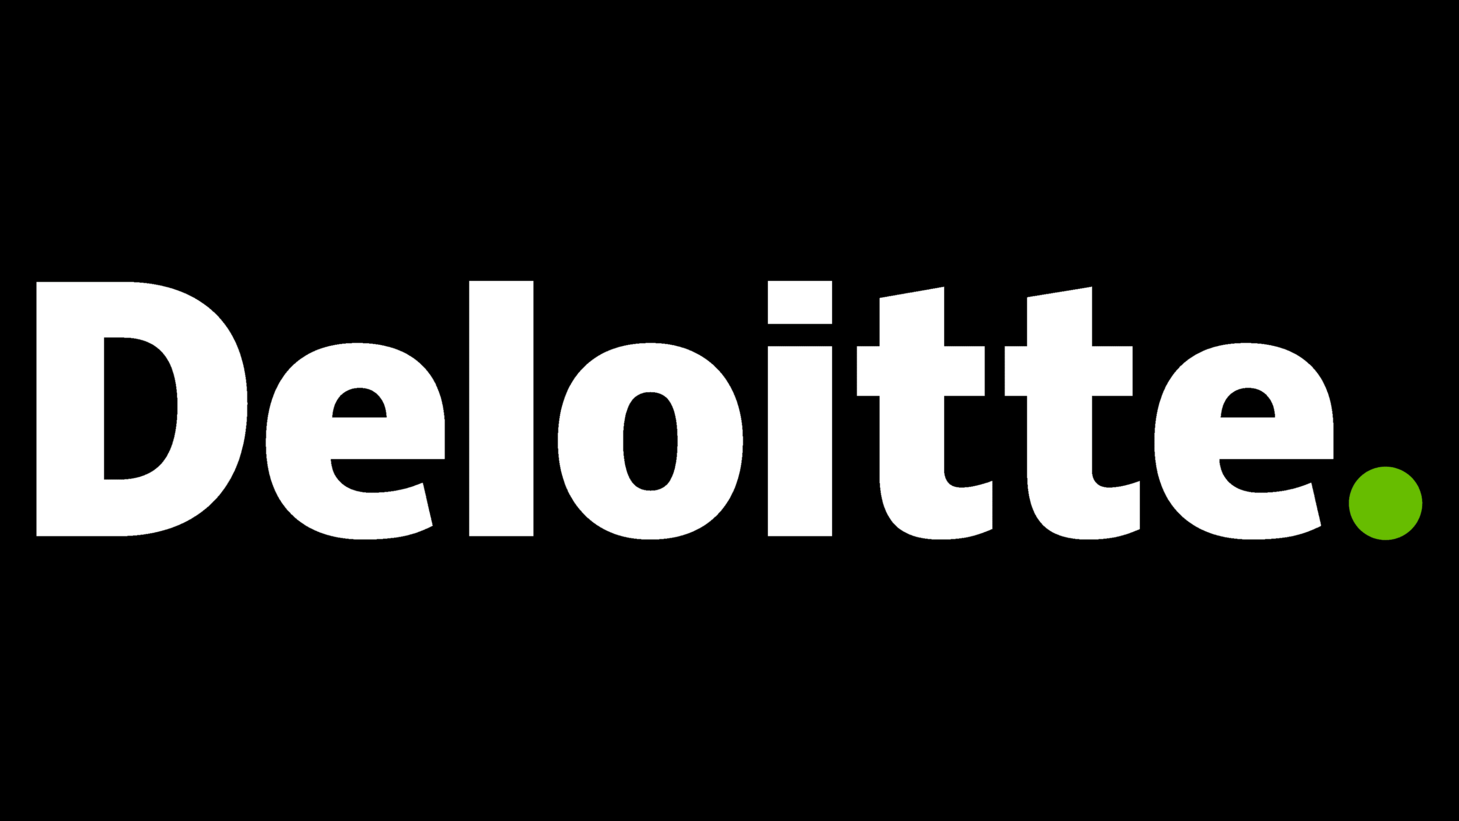 Deloitte symbol